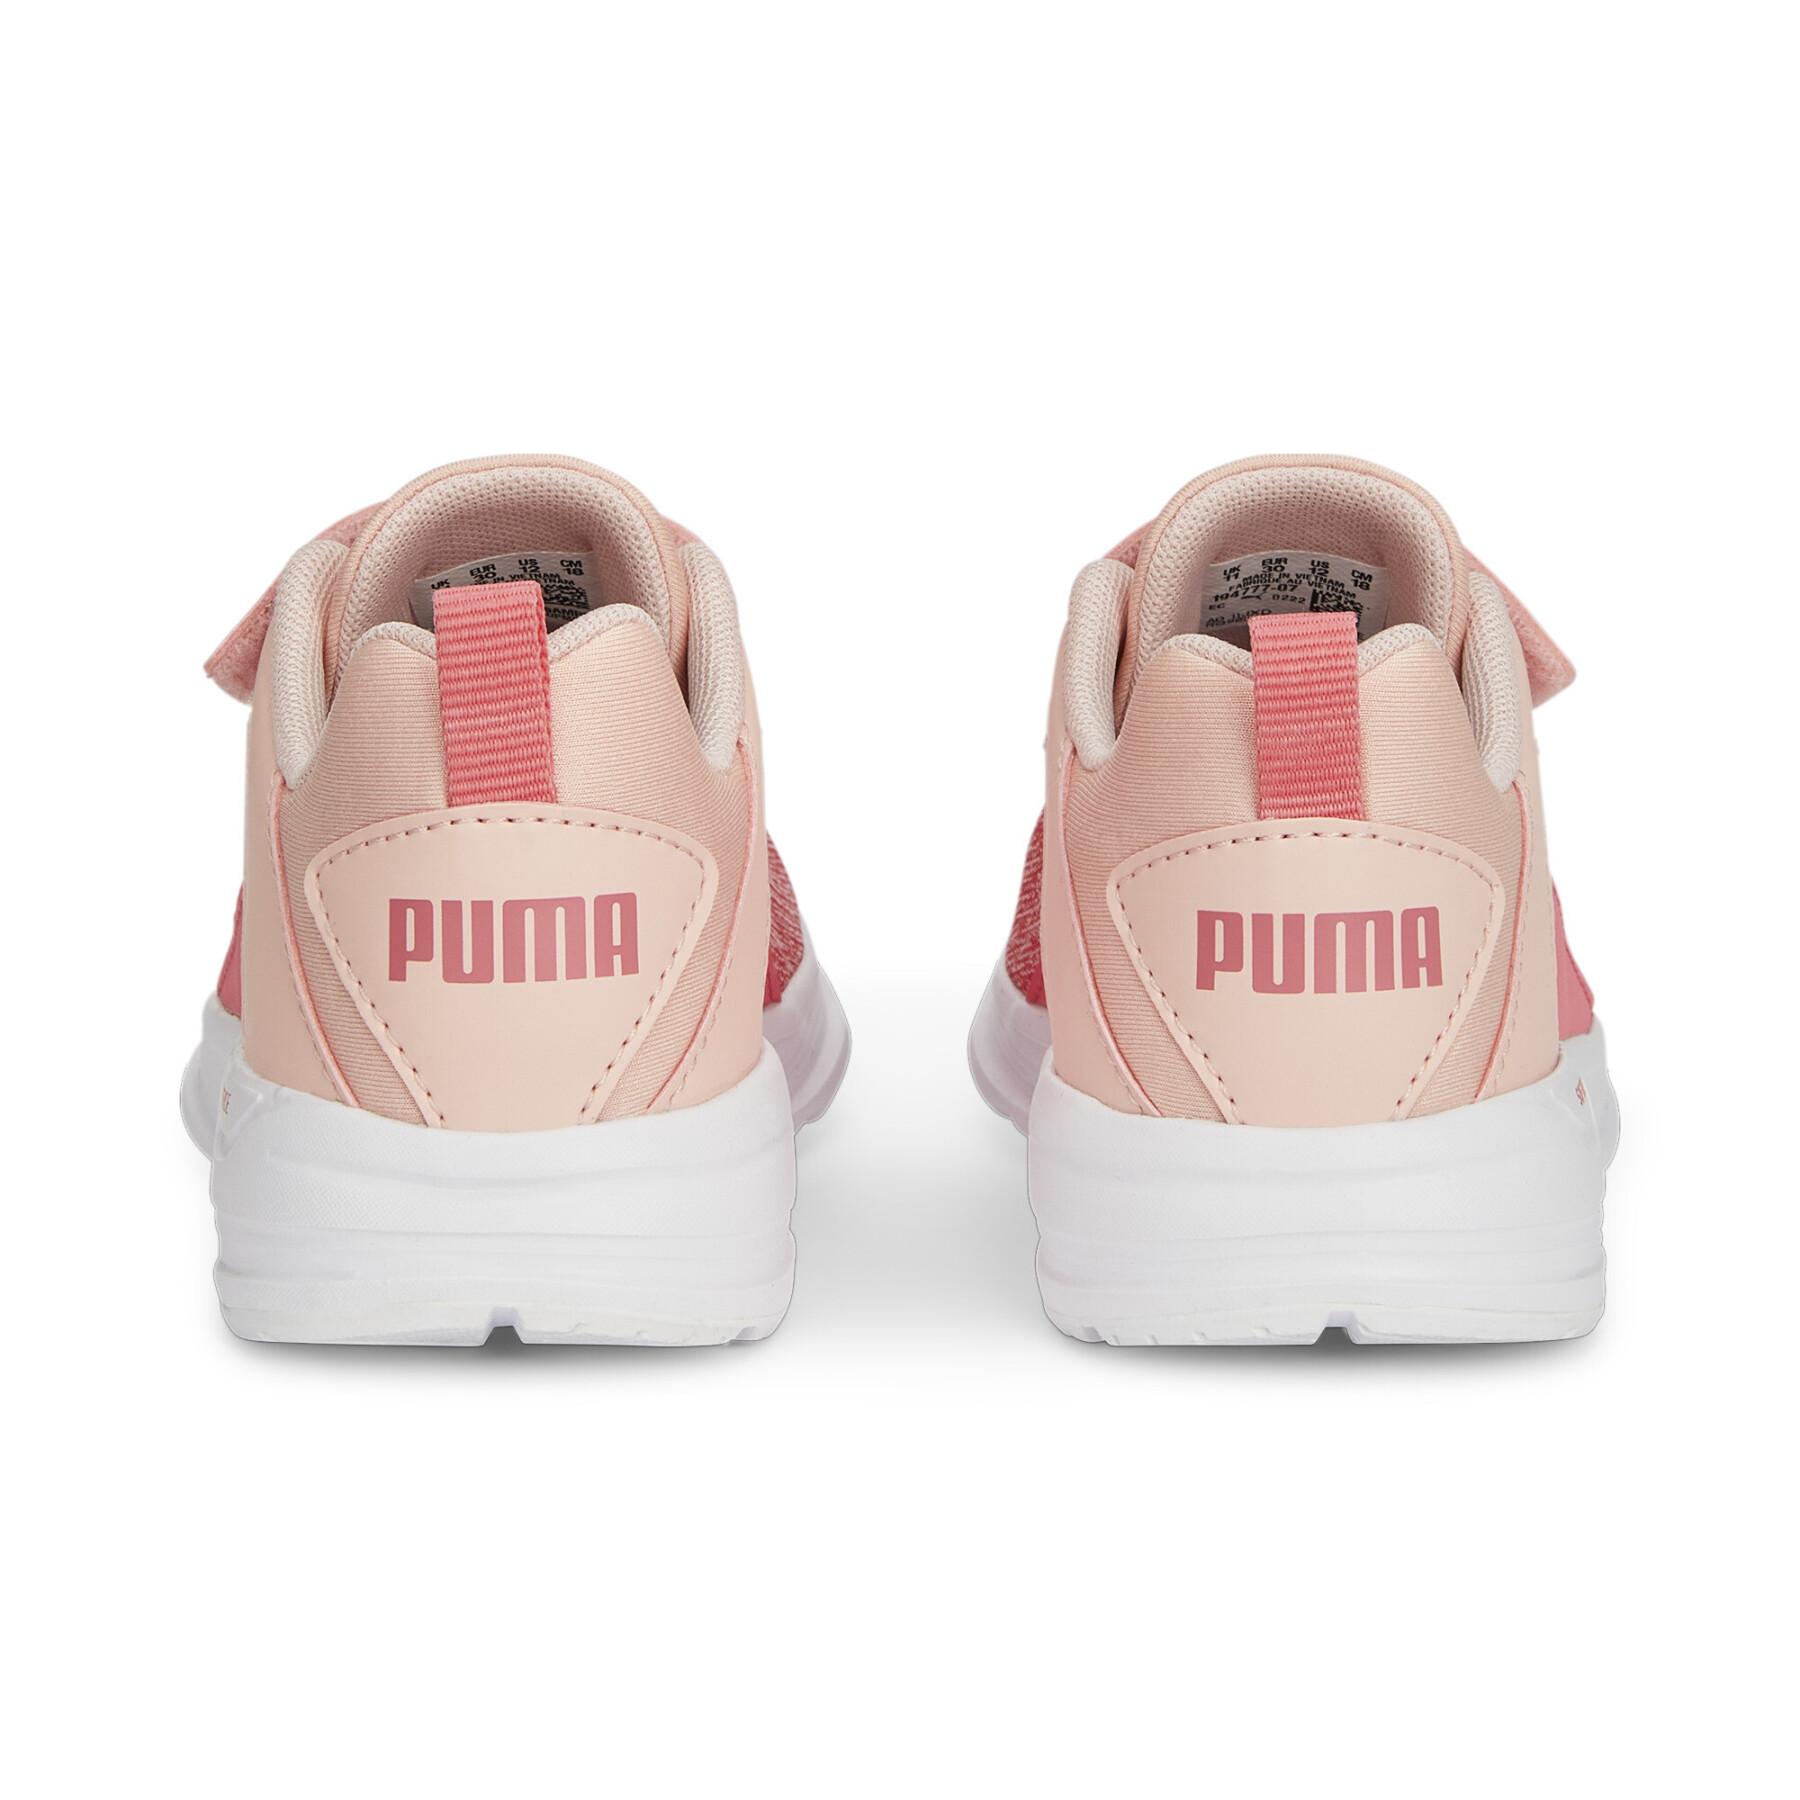 Loopschoenen voor kinderen Puma